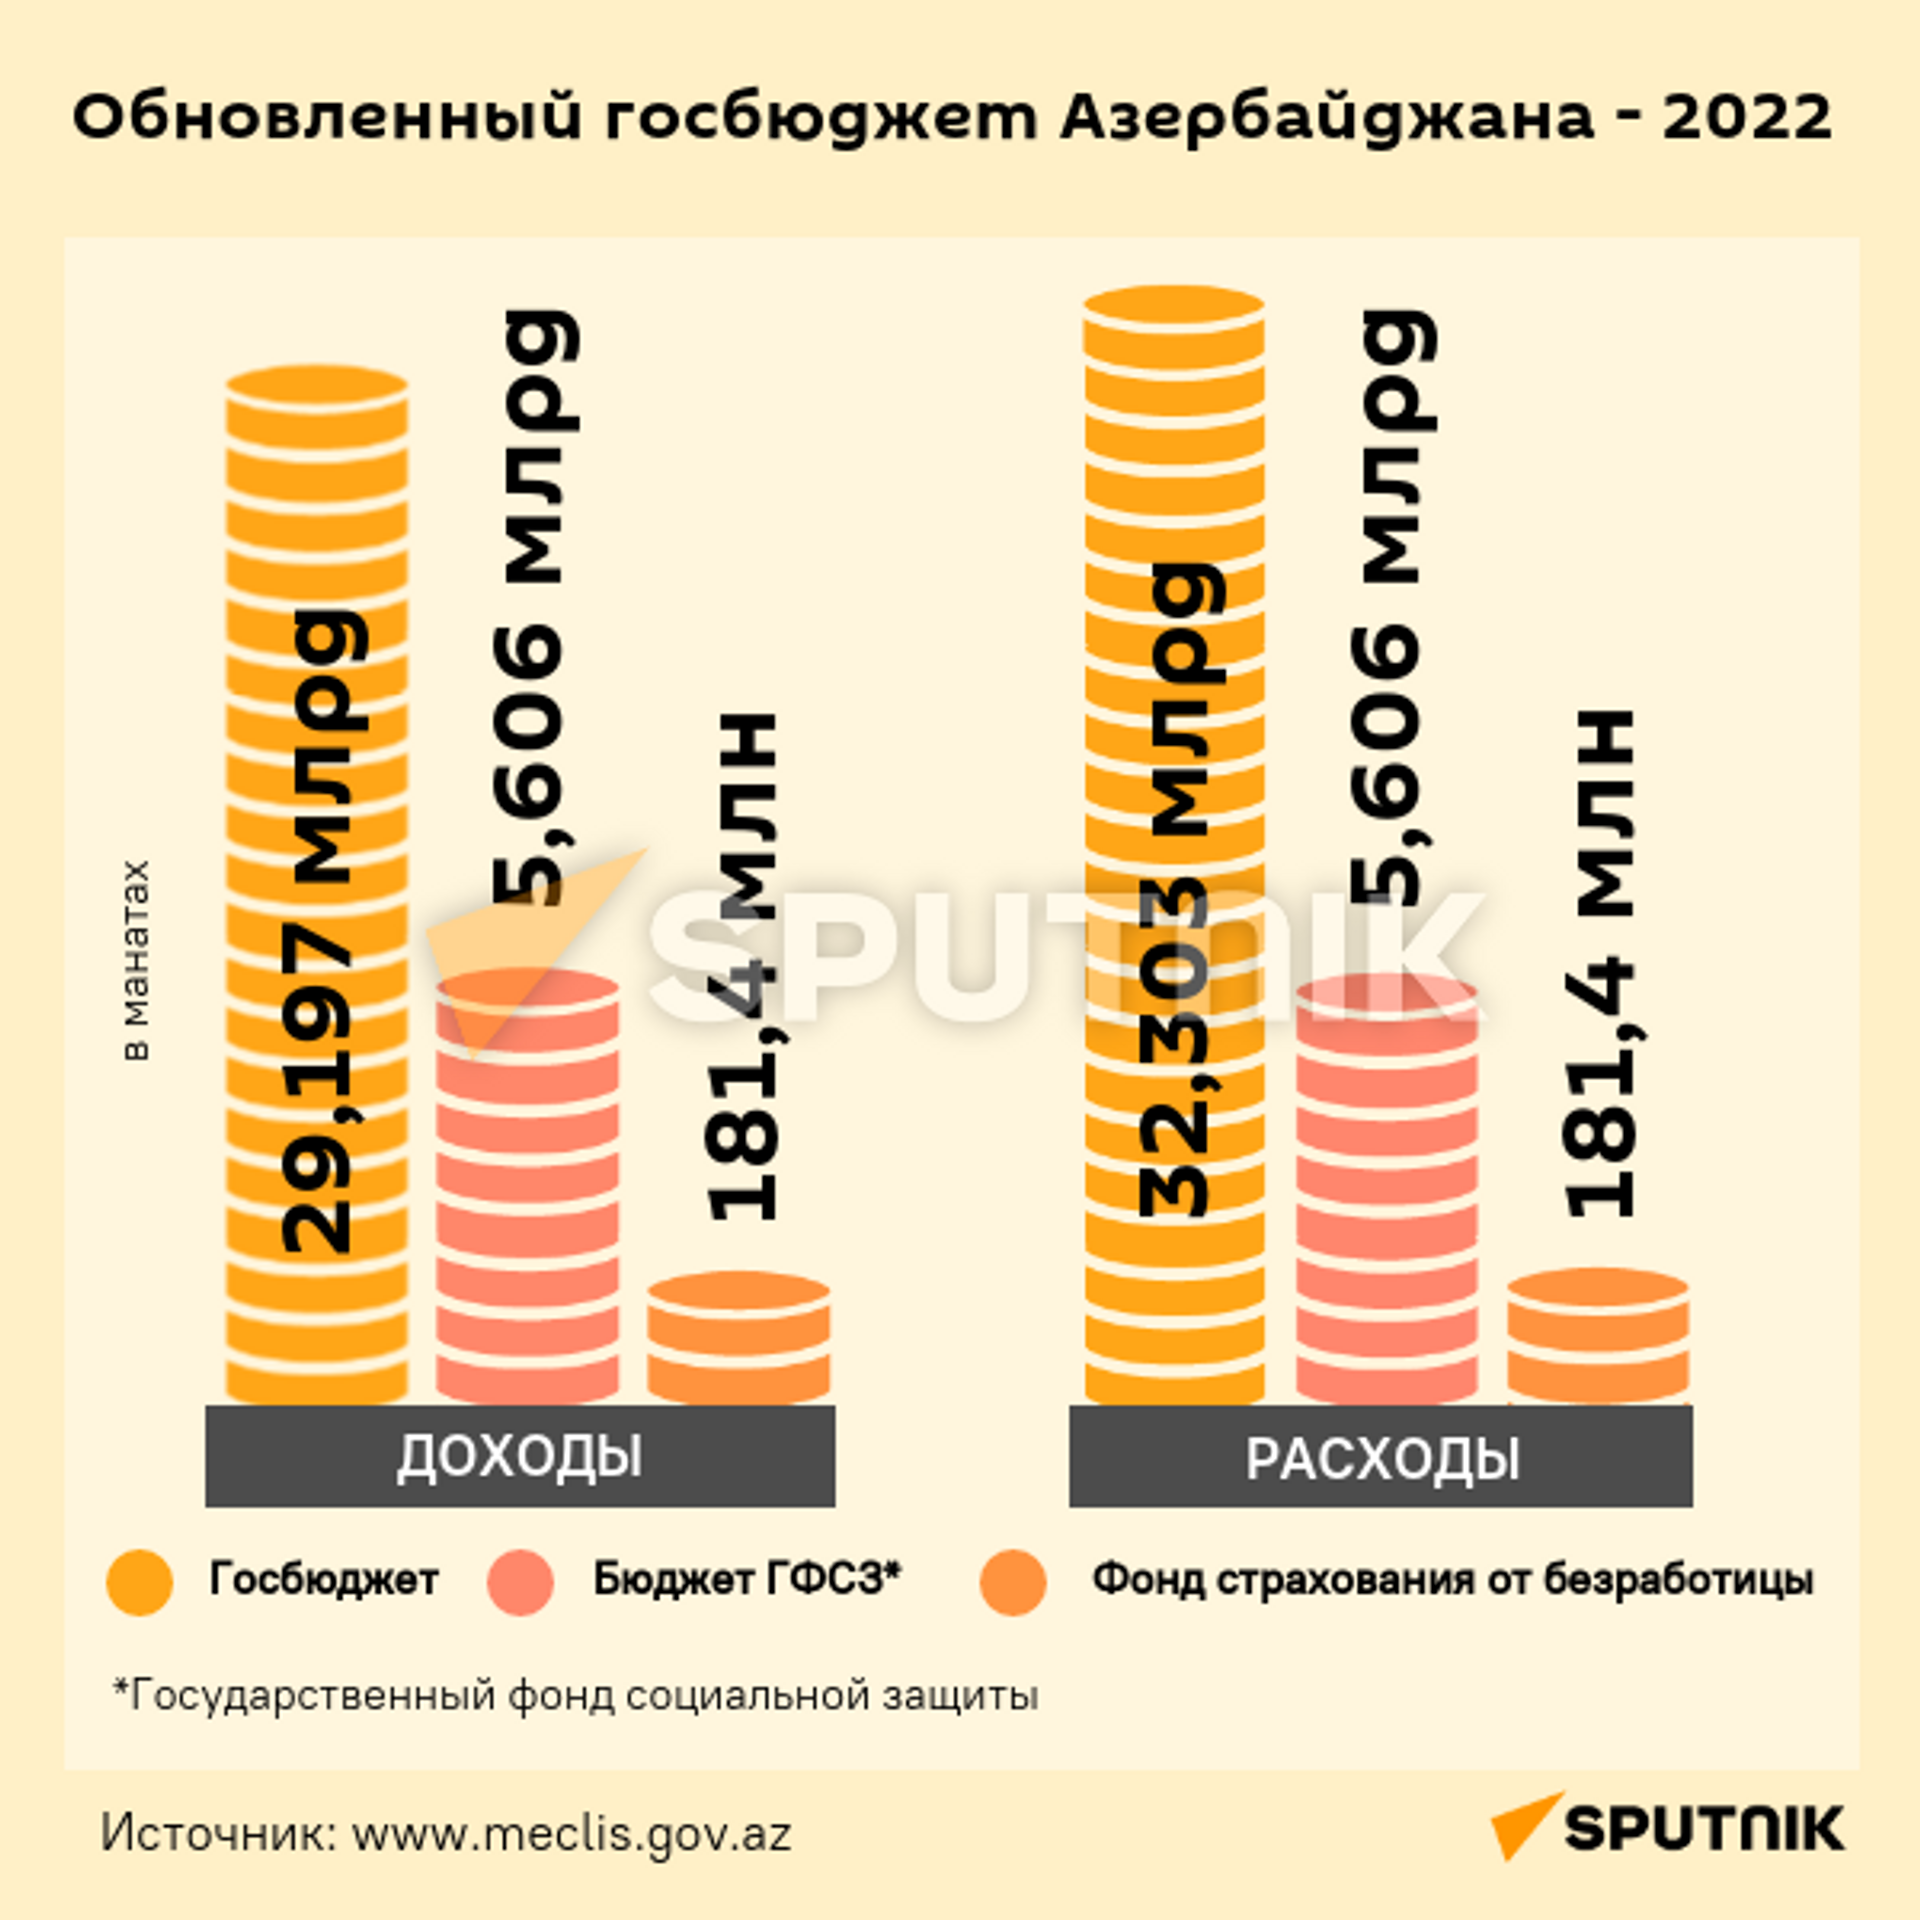 Инфографика: Обновленный госбюджет Азербайджана - 2022 - Sputnik Азербайджан, 1920, 14.07.2022